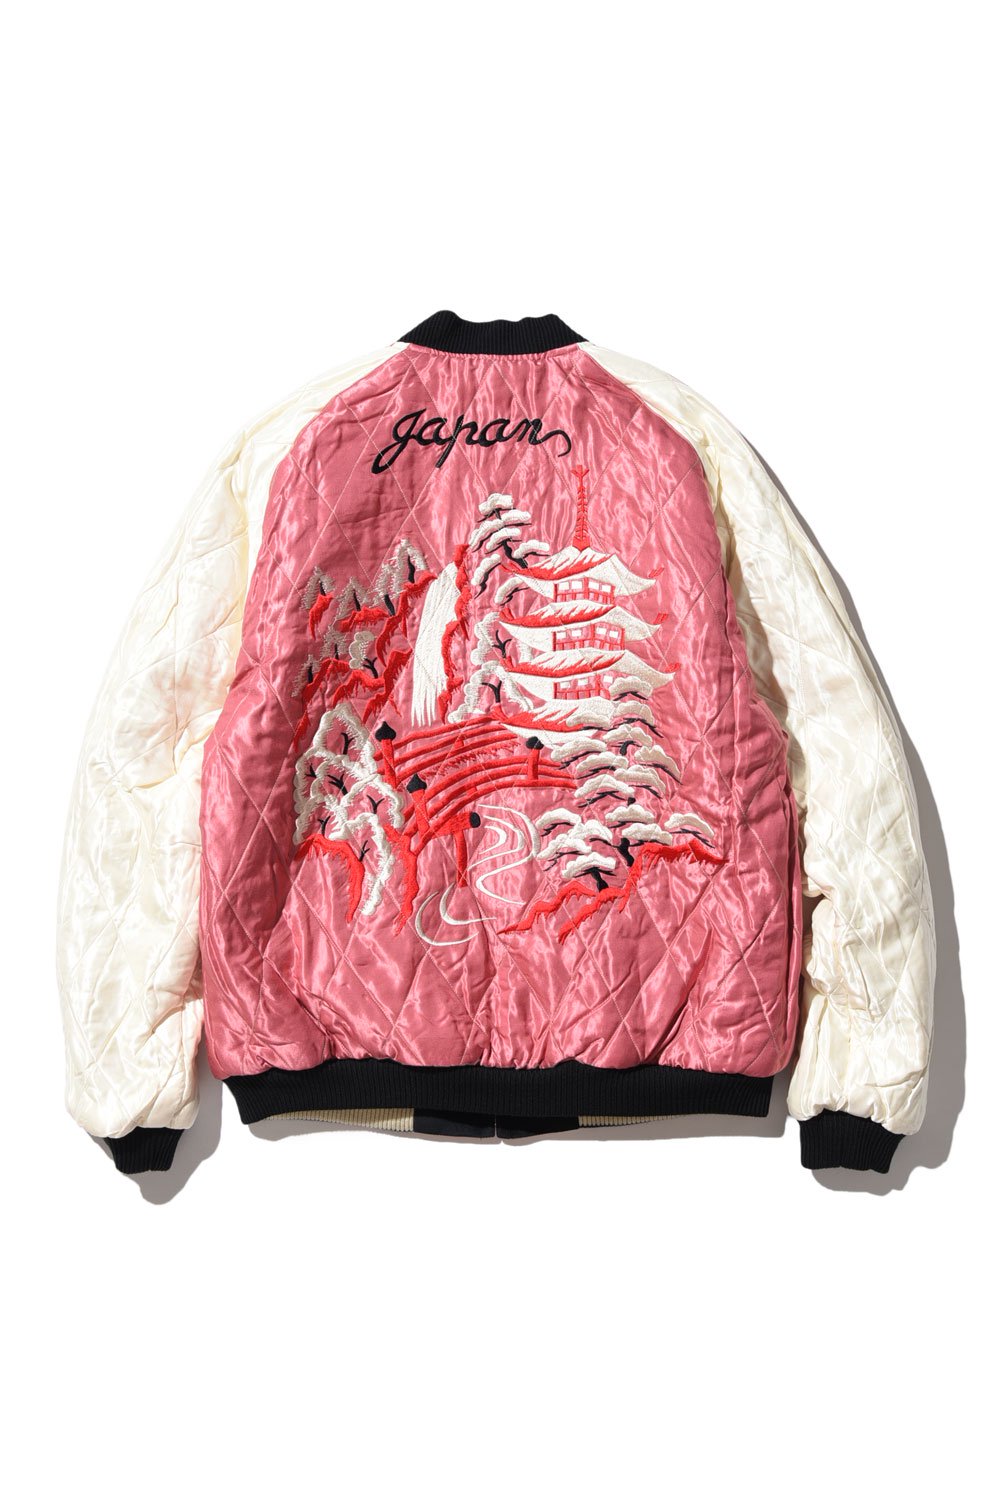 ダイリク DAIRIKU 良品 20SS Dragon Embroidery Souvenir Jacket スーベニアジャケット ドラゴン 刺繍  レーヨンサテン ブルー系 F - メンズファッション